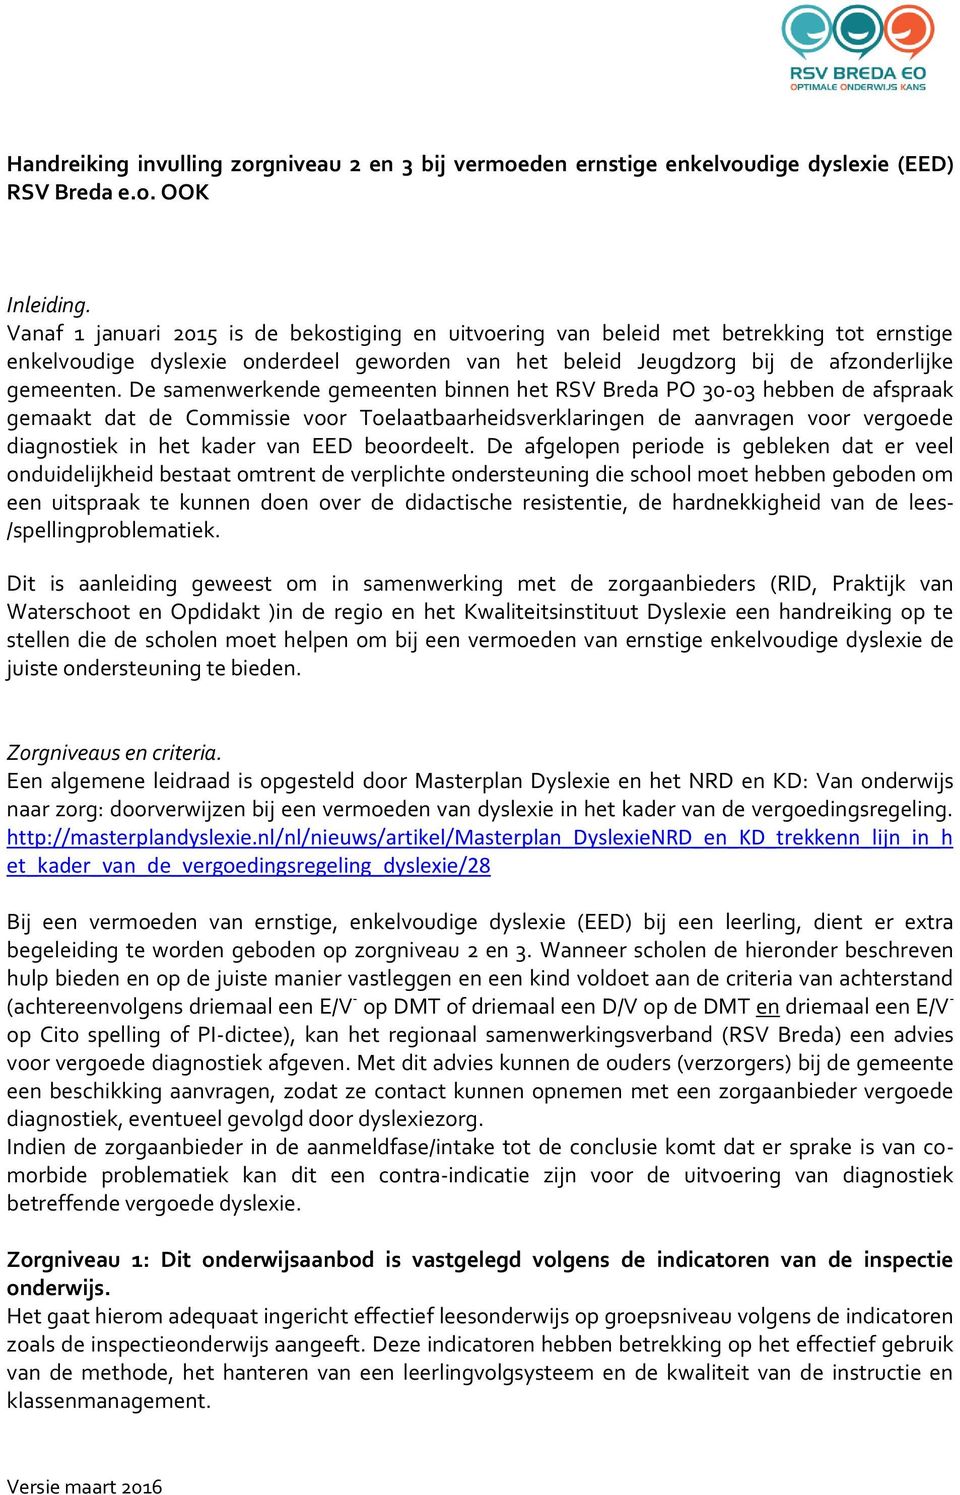 De samenwerkende gemeenten binnen het RSV Breda PO 30-03 hebben de afspraak gemaakt dat de Cmmissie vr Telaatbaarheidsverklaringen de aanvragen vr vergede diagnstiek in het kader van EED berdeelt.